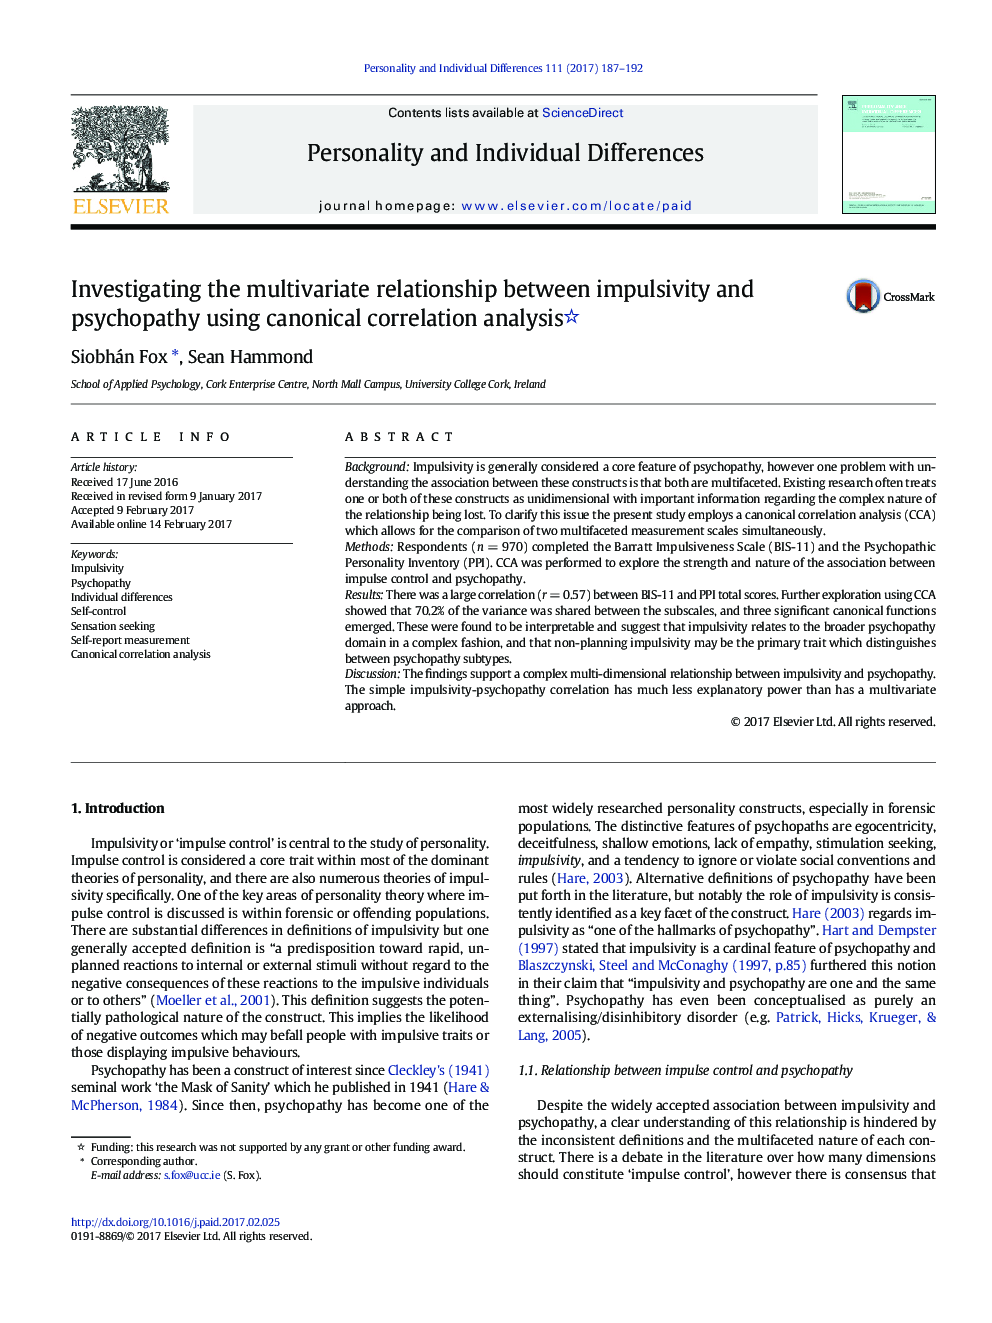 بررسی رابطه چند متغیره بین تکانشی و روانپزشکی با استفاده از تحلیل همبستگی کانونی 